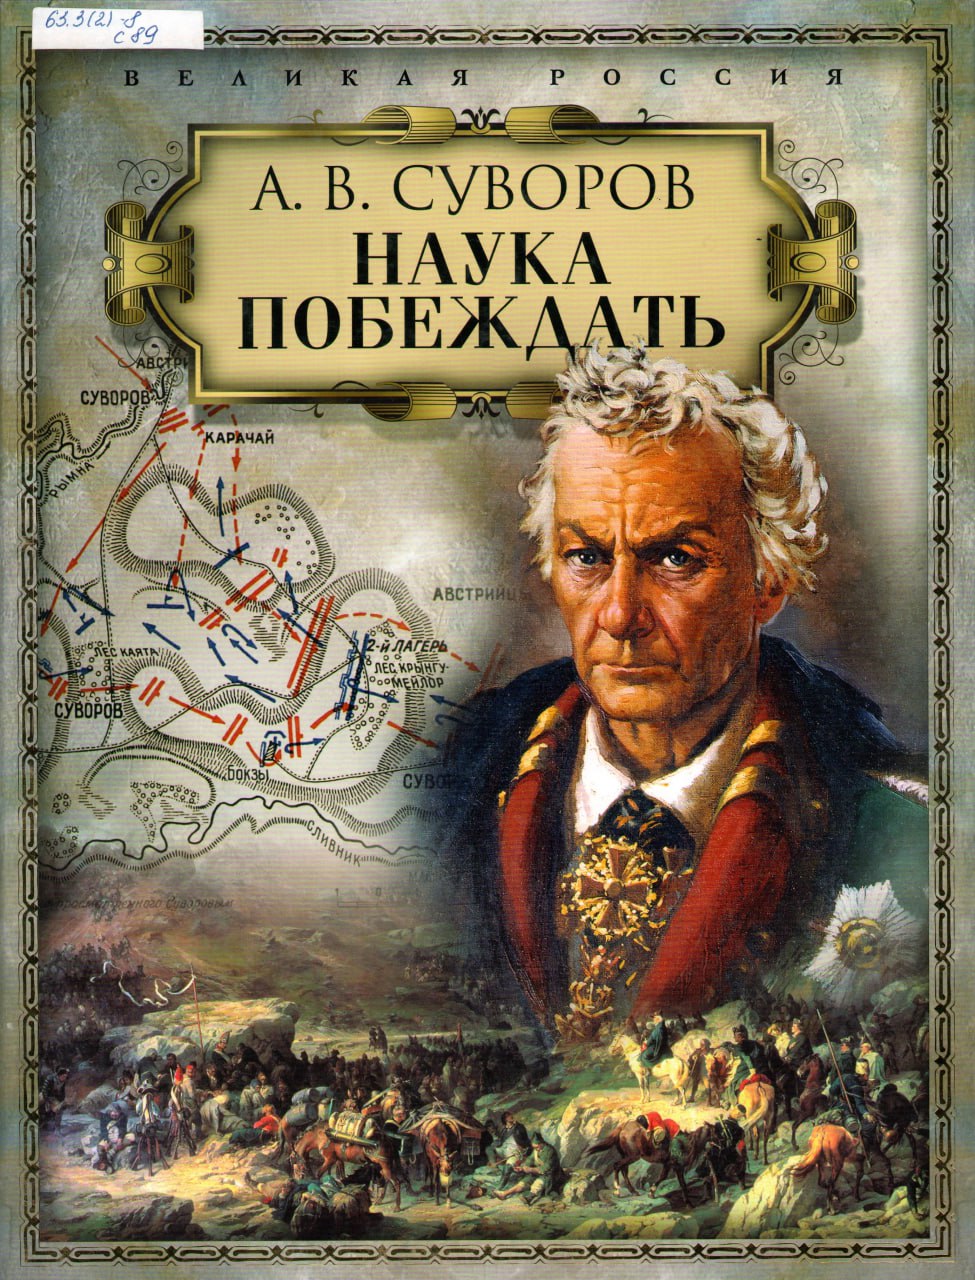 Известный полководец написавший книгу наука. Книга Суворова наука побеждать.